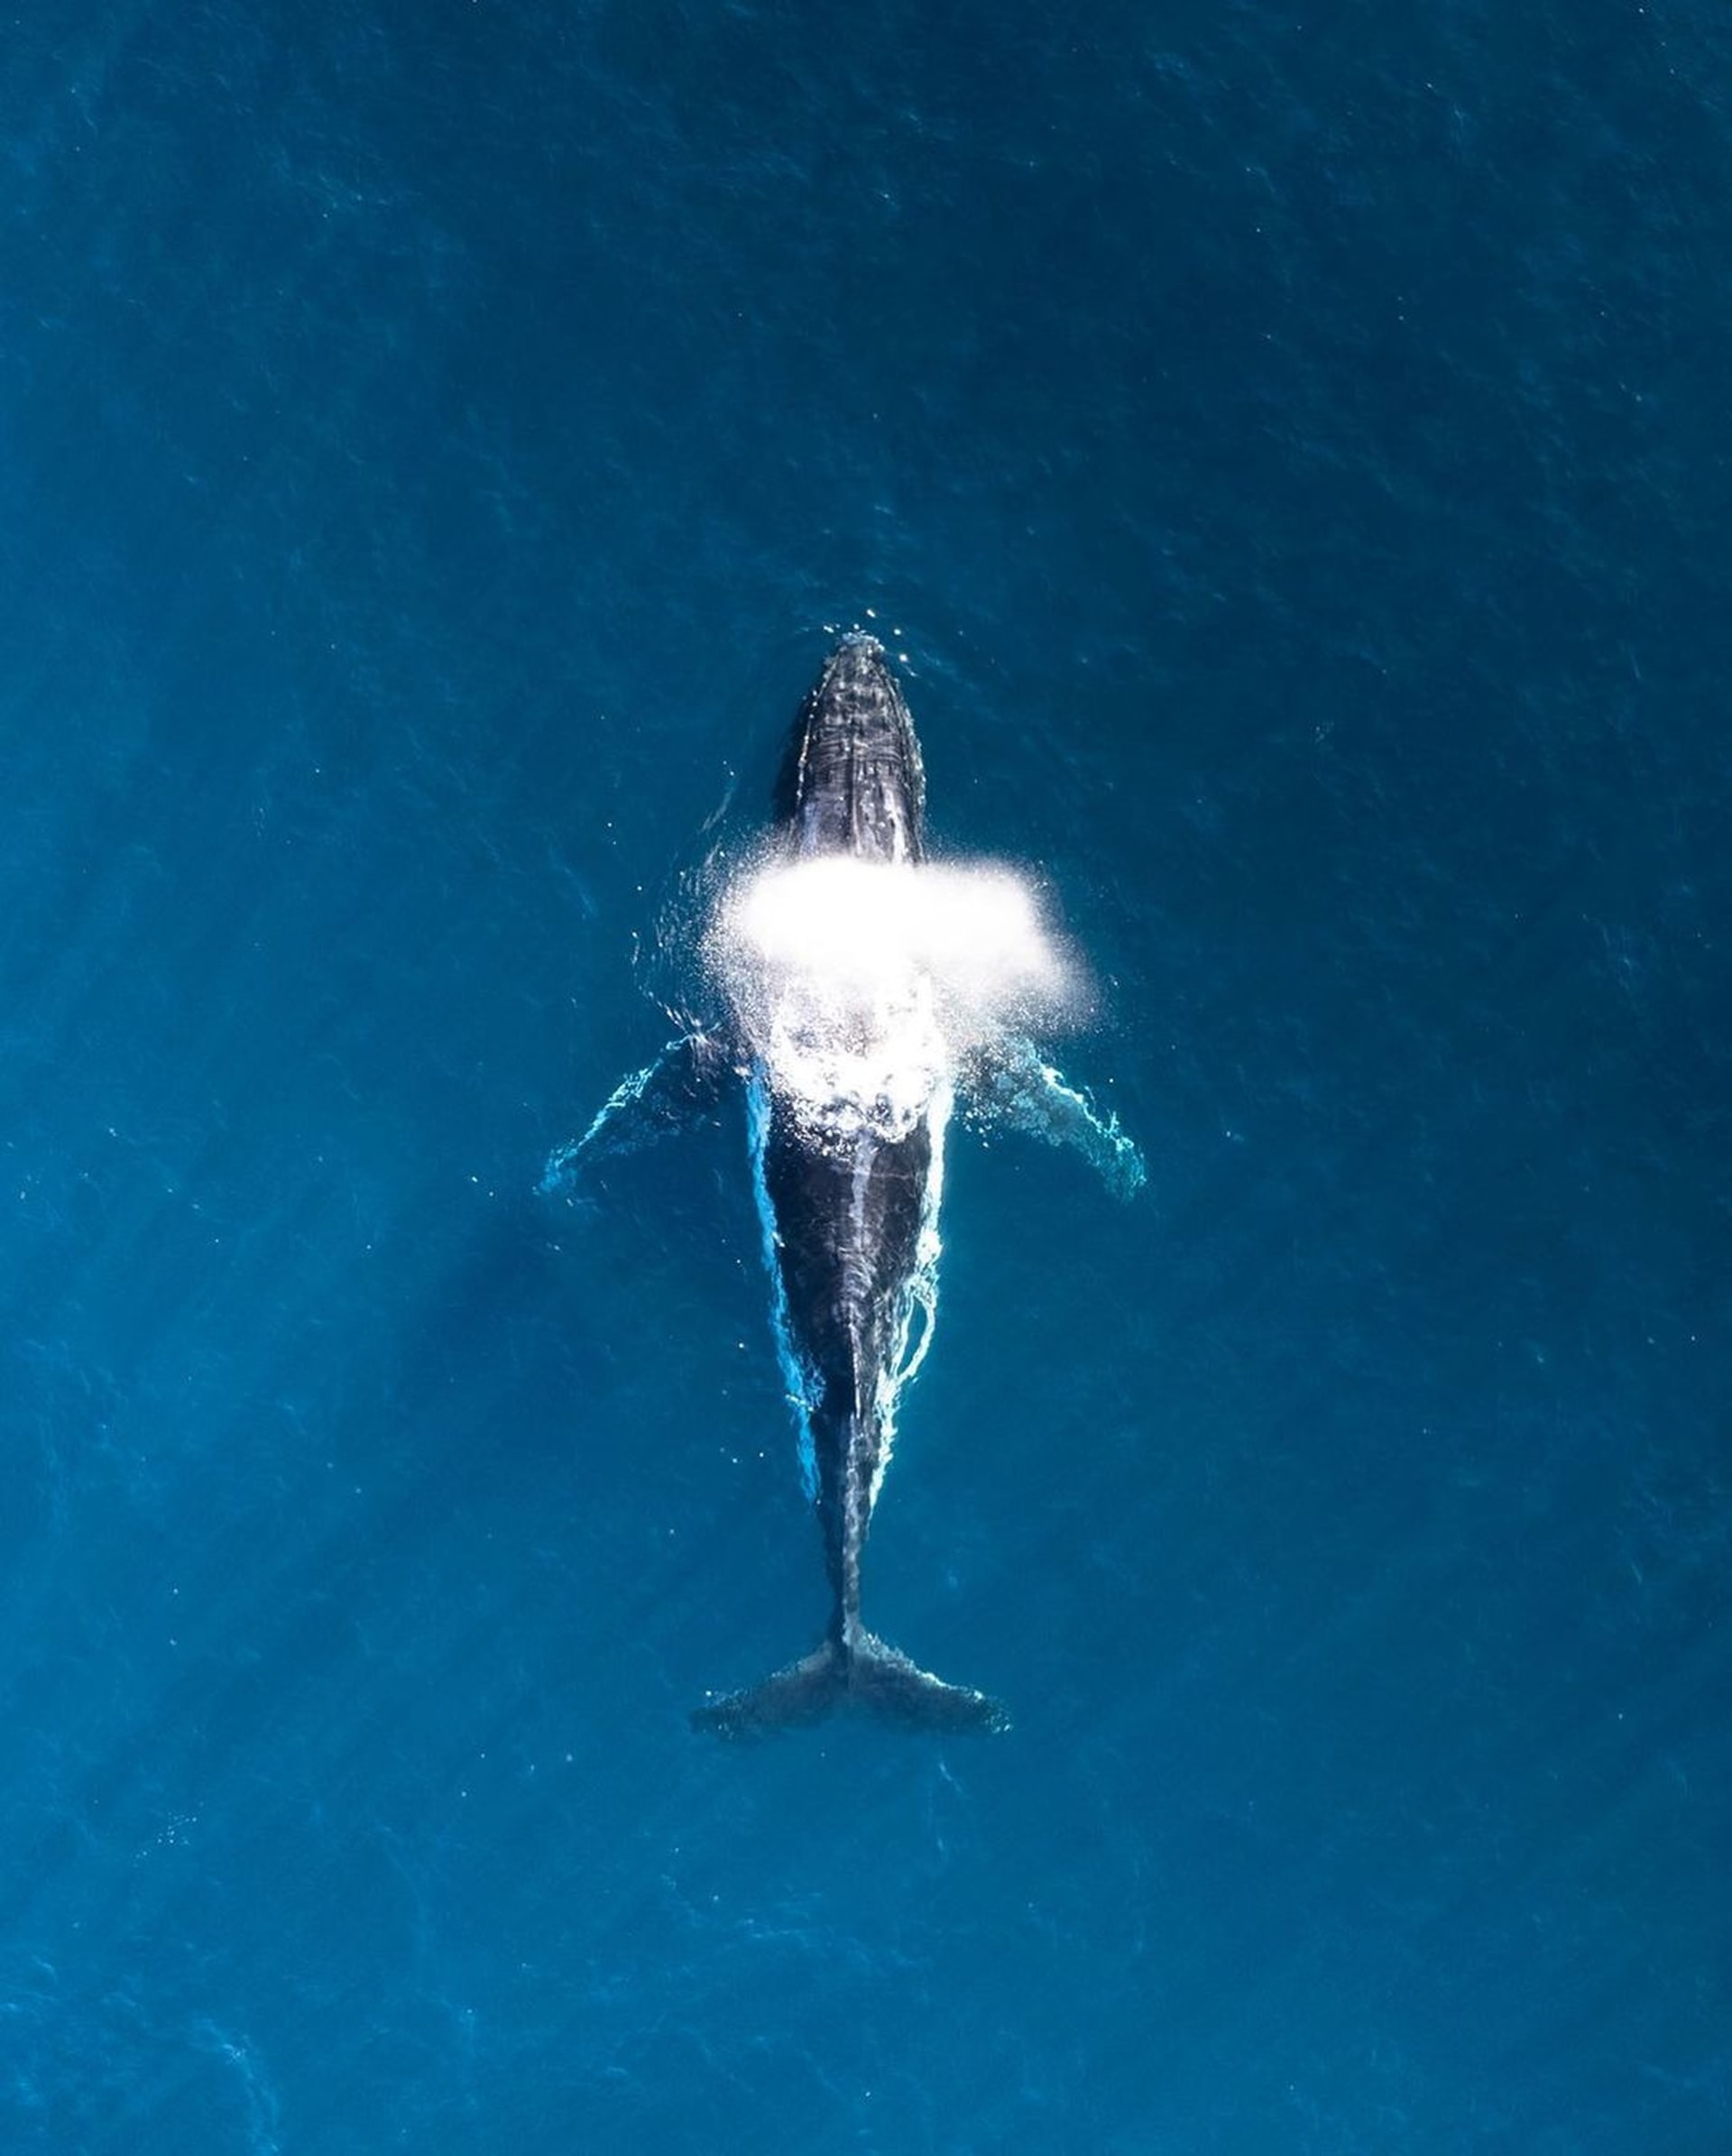 La mayoría de los expertos coinciden en que la ballena azul es el animal más grande que ha vivido en la Tierra... incluso dicen que es el más ruidoso. El cachalote enano sólo mide 2 metros y es la ballena más pequeña. La ballena promedio puede medir hasta 105 pies de largo.